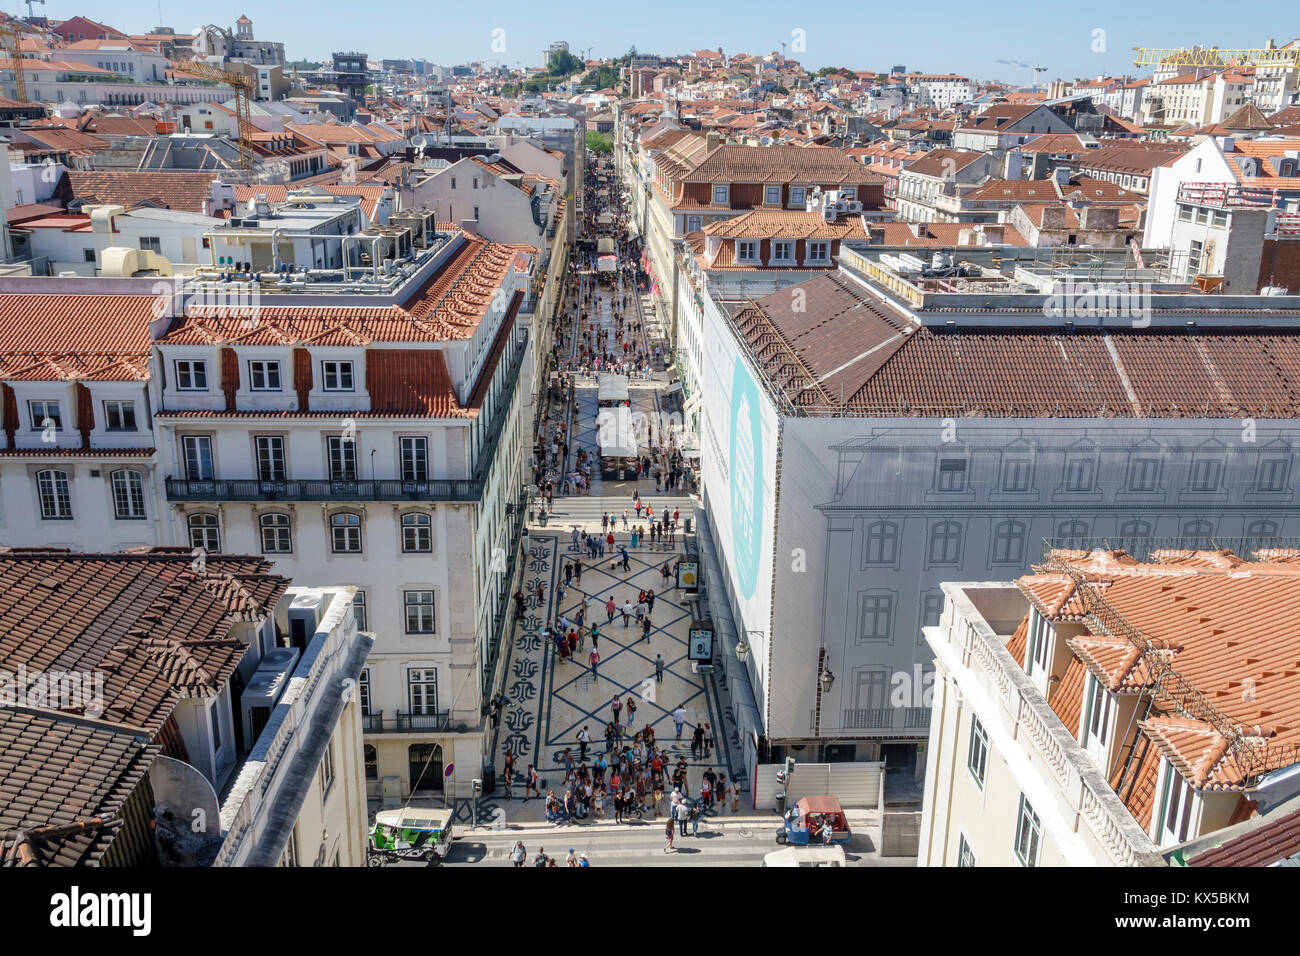 Lissabon Portugal, Baixa, Chiado, historisches Zentrum, Rua Augusta, Fußgängerzone, Promenade, Overhead, Luftaufnahme von oben, Aussicht, Panorama, City Skylin Stockfoto